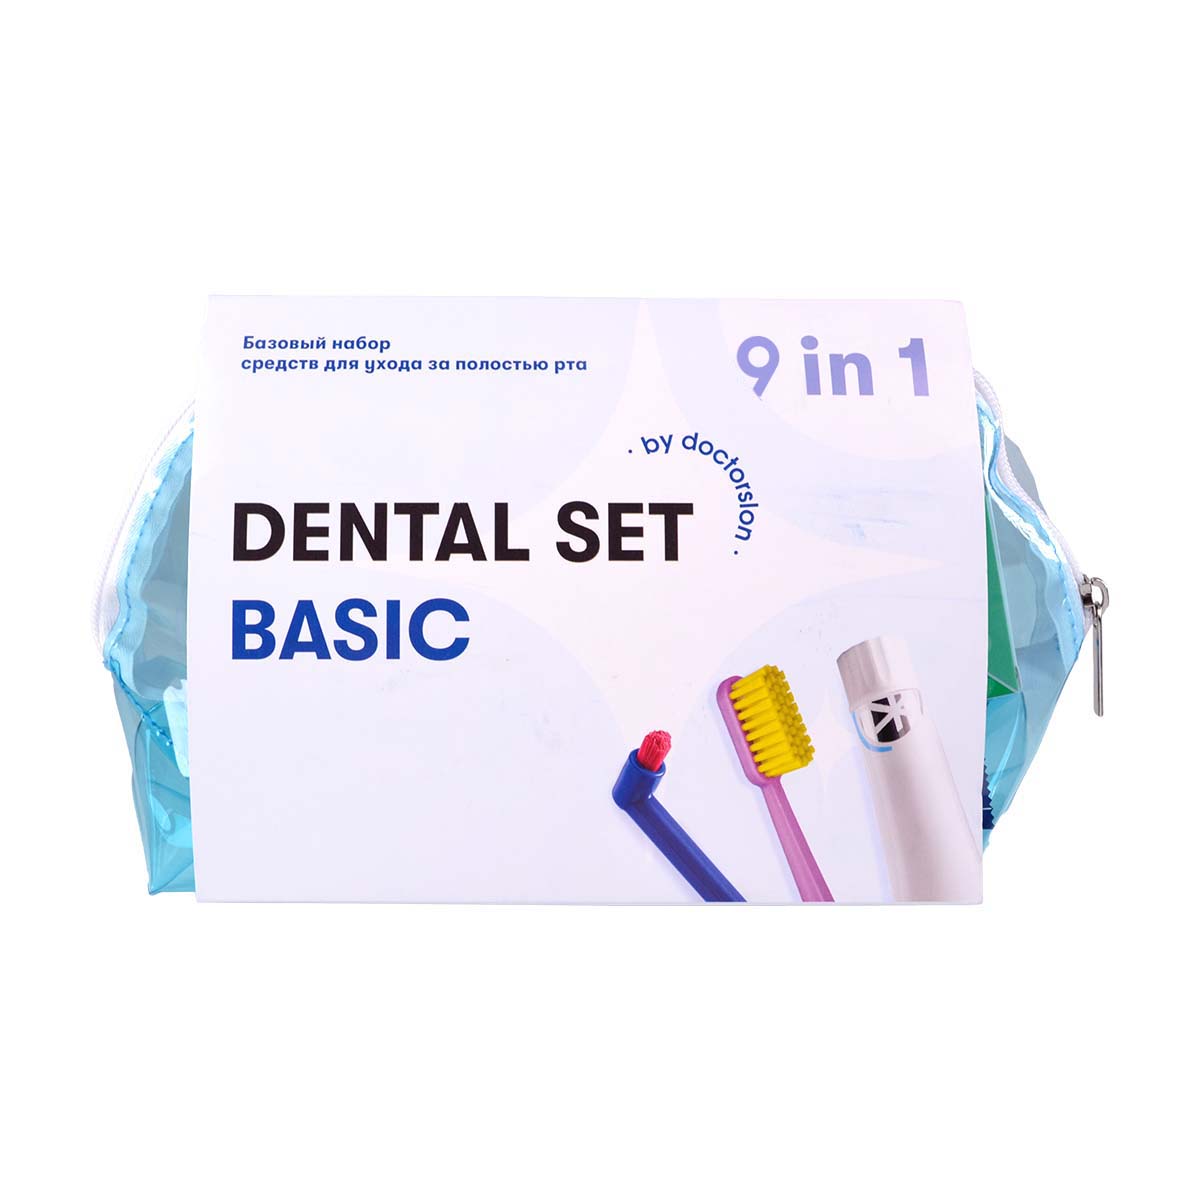 Готовый набор для гигиены Dental Box Dental Set basic